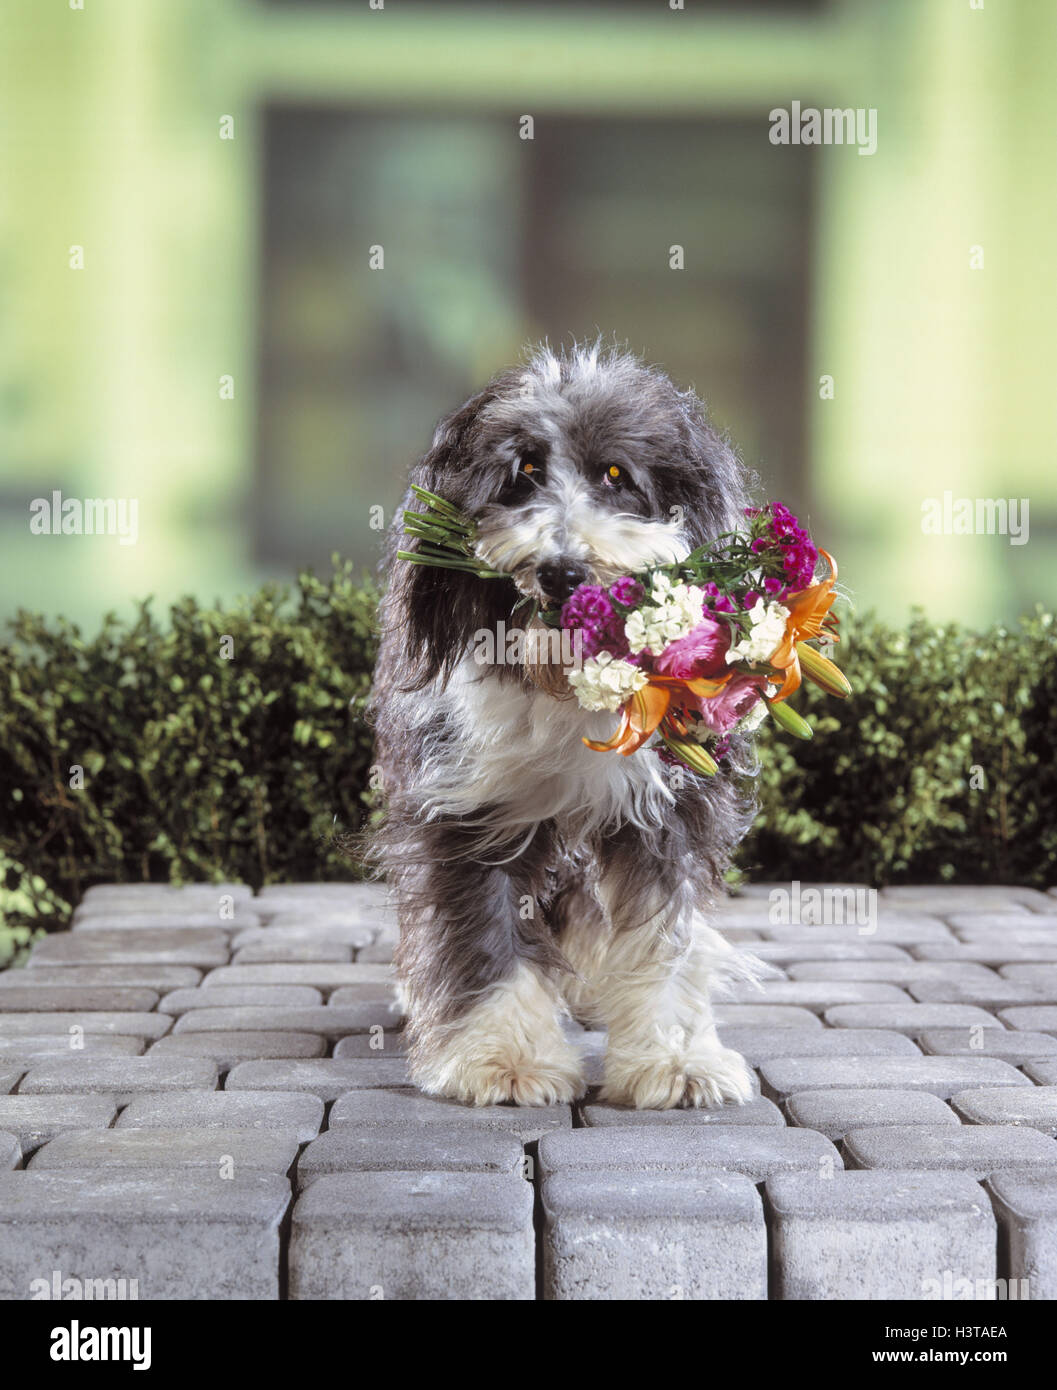 Hund, Blumenstrauß, nicht frei für Kalender-mk/Rb-Tiere, Haustiere, Hybrid, Hybrid-Hund süß, Anwendungsgebieten, Blumen, präsentieren, abzurufen, zu bringen, halten, Schnauze, Mund, Entschuldigung, Glückwünsche, im Außenbereich Stockfoto